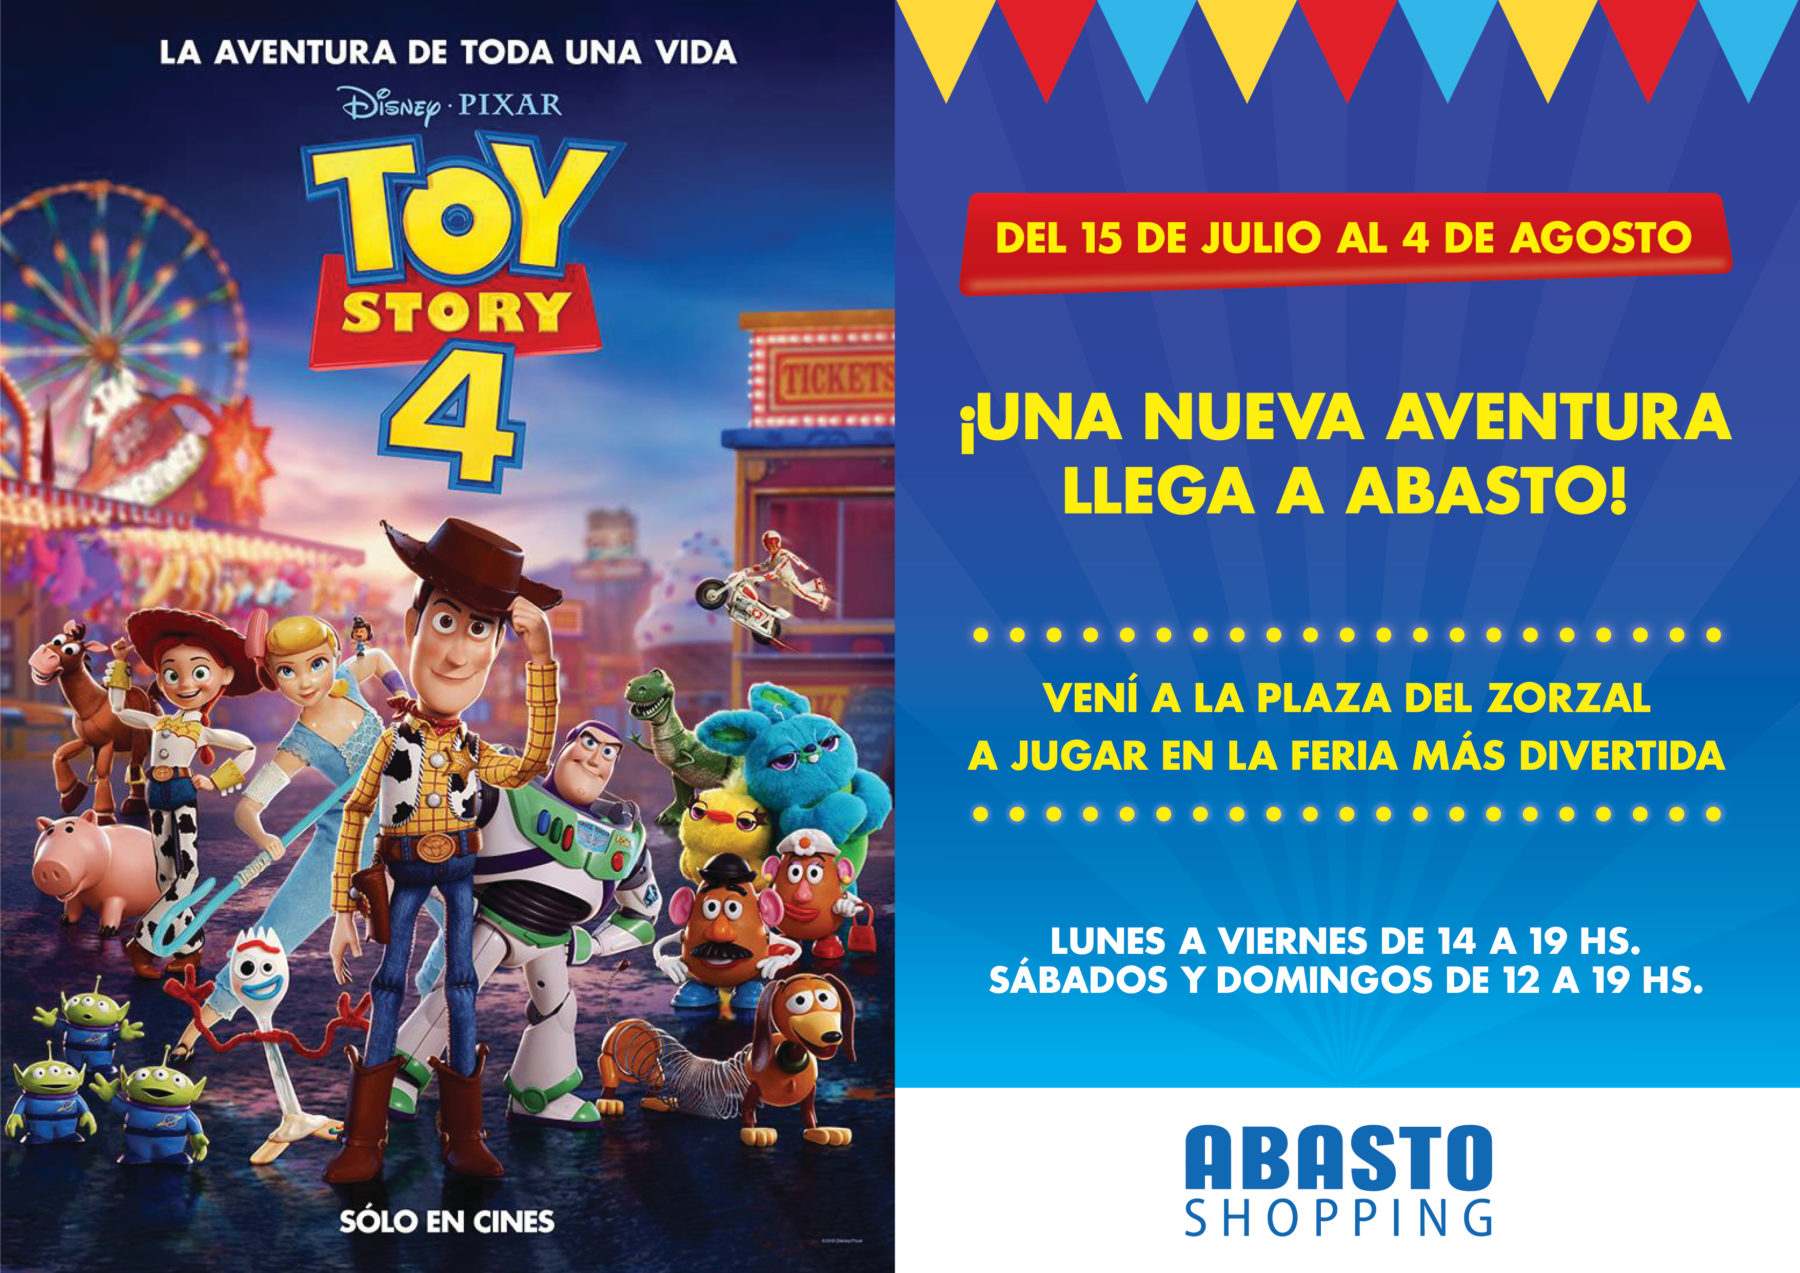 Abasto Shopping invita a jugar en la feria de atracciones inspirada en “Toy Story 4”